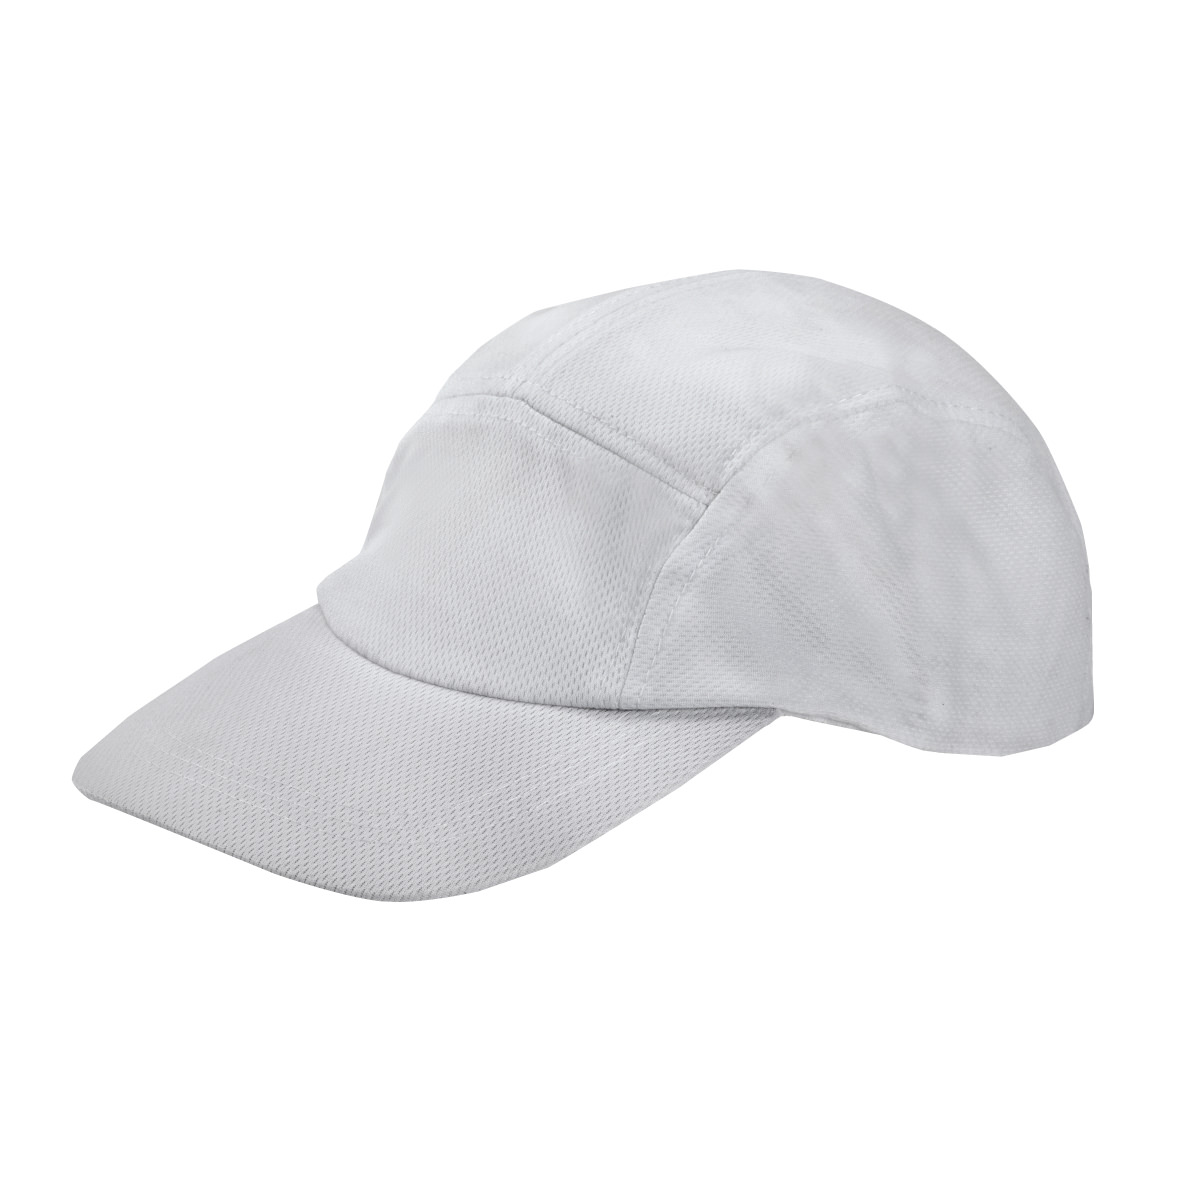 כובע Dry-Fit איכותי - טרייל טיים